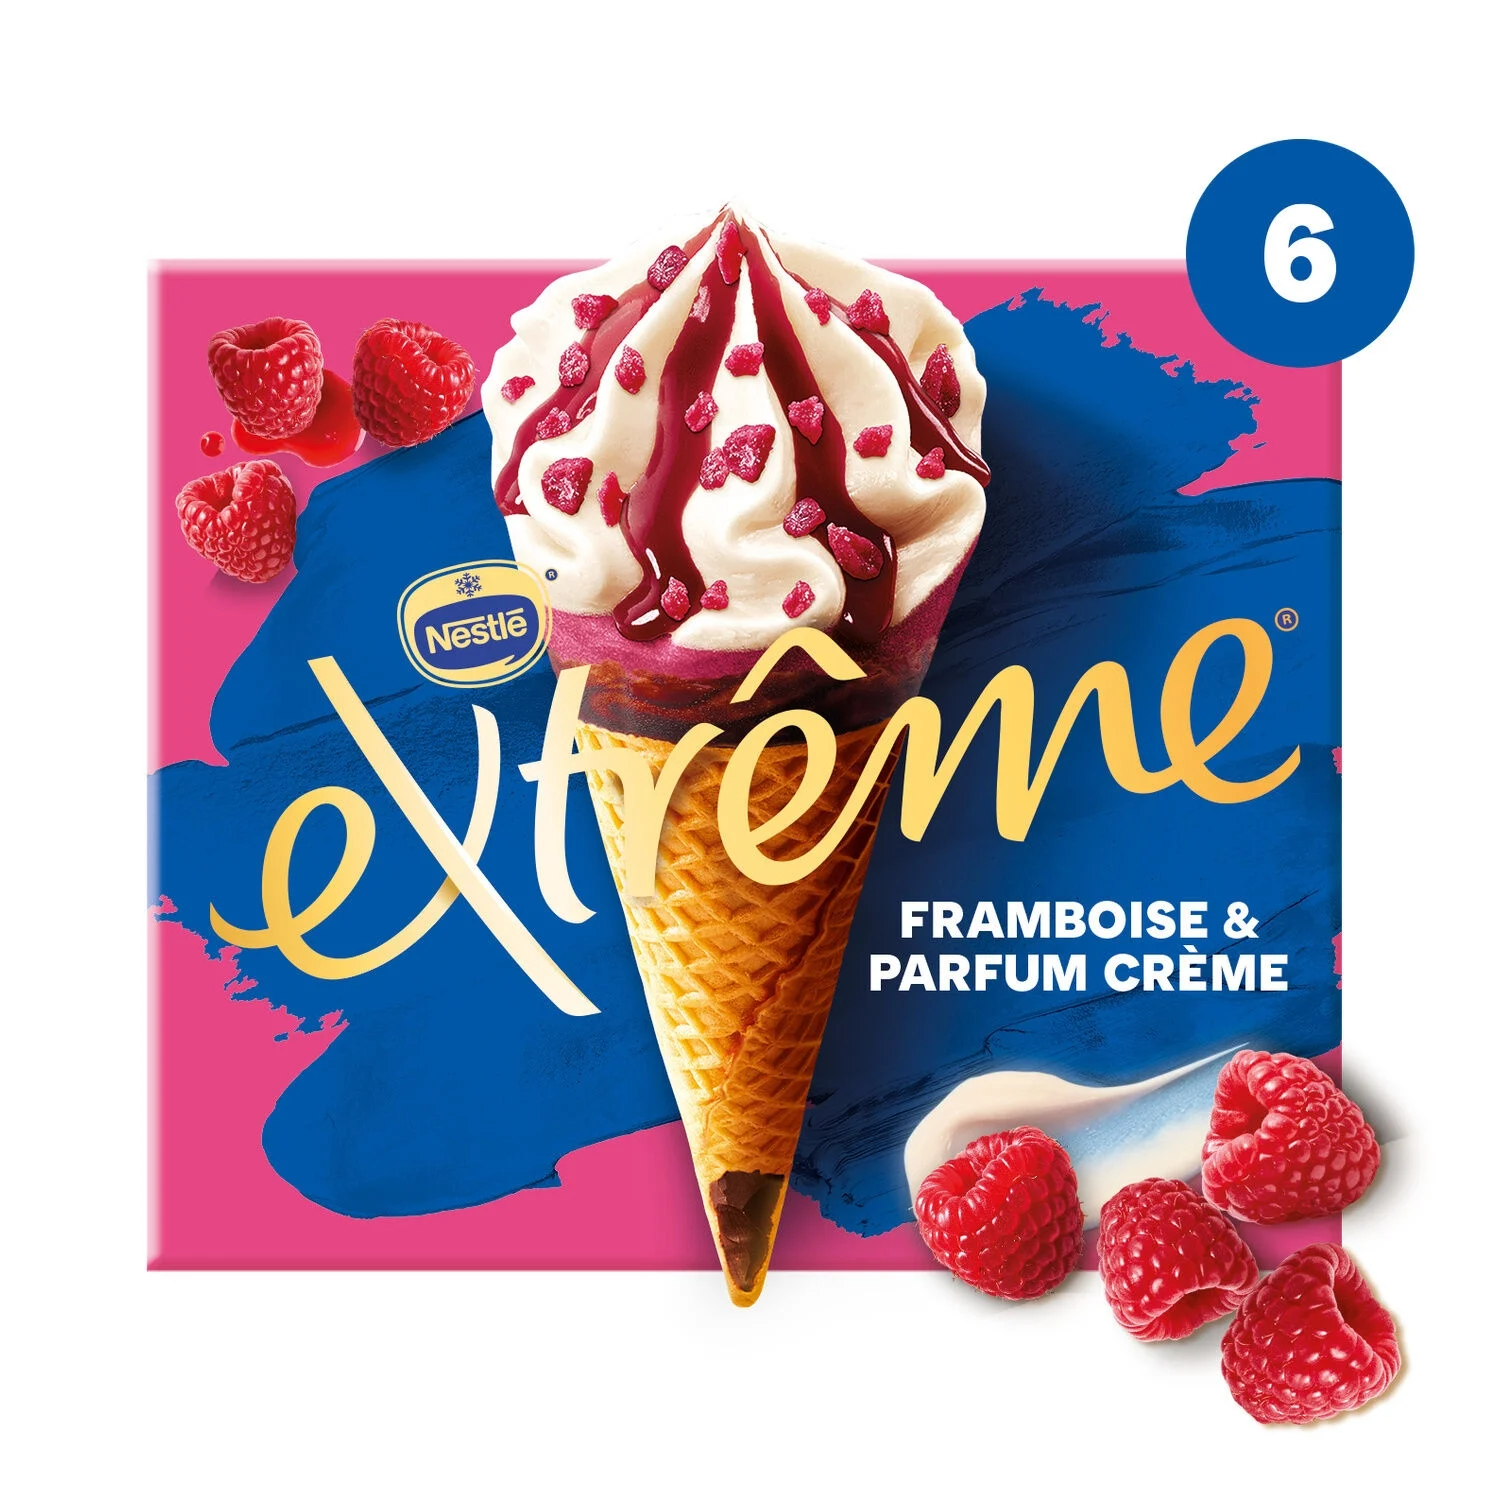 417g Extreme Framboise Creme